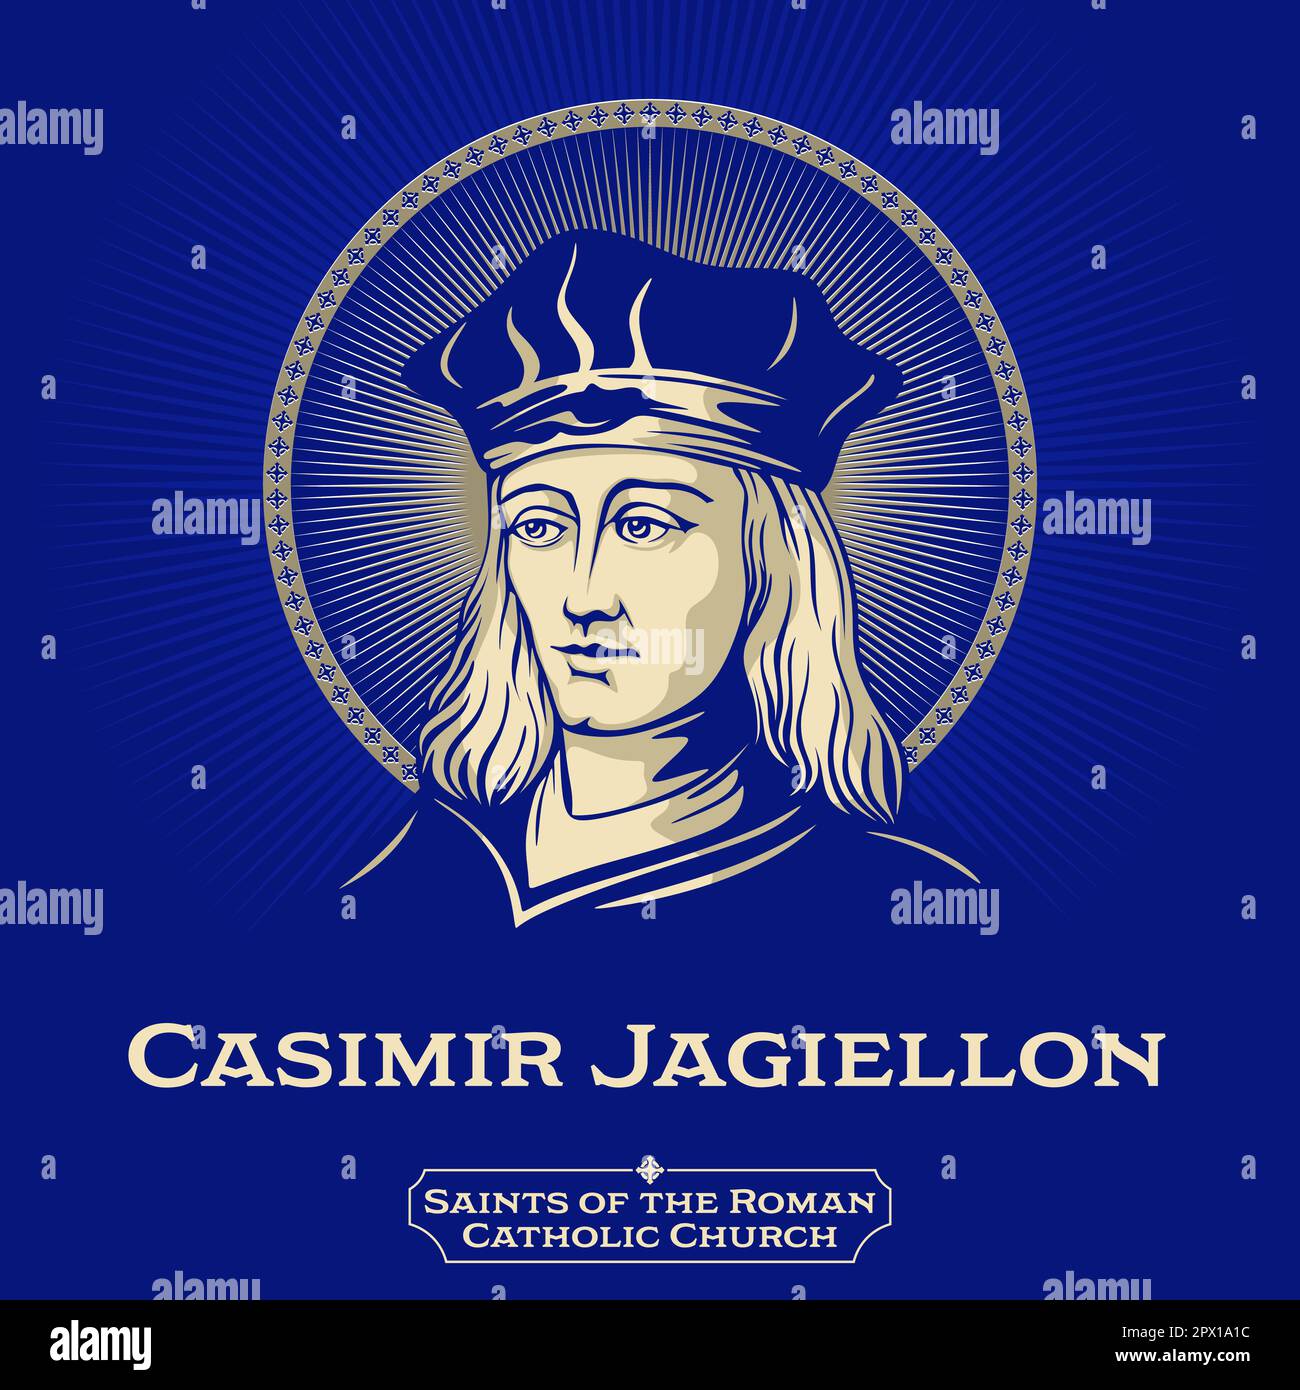 Santi cattolici. Casimir Jagiellon (1458-1484) è stato un principe del Regno di Polonia e del Granducato di Lituania. Illustrazione Vettoriale